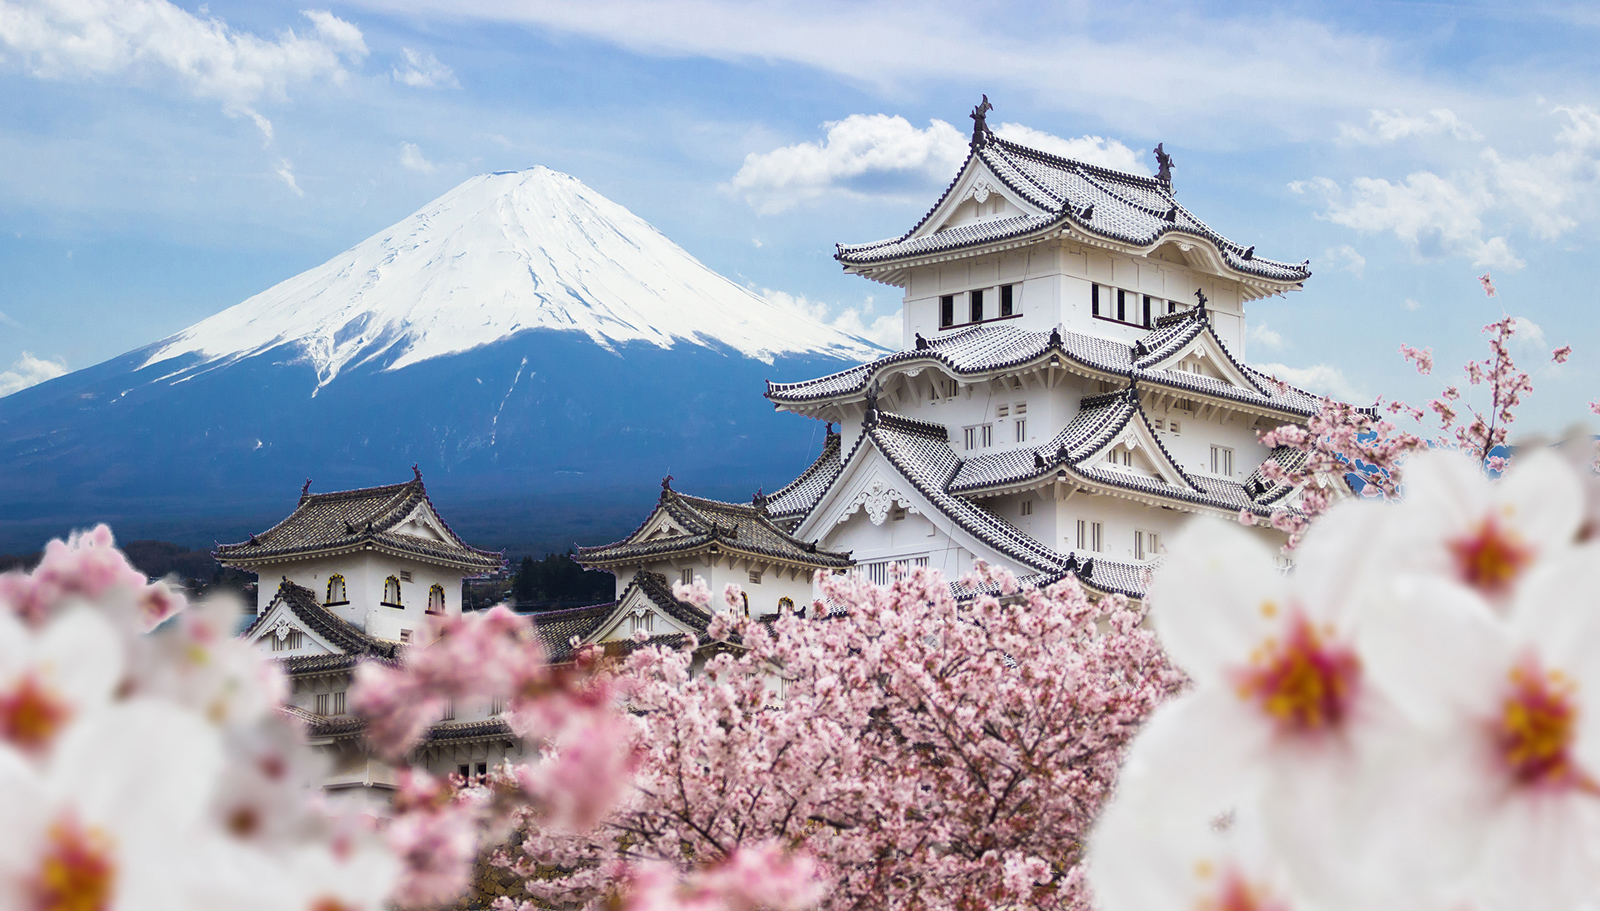 Hãy khám phá thế giới kinh doanh hoa anh đào Nhật Bản, nơi mà sự sang trọng và tinh tế được đẩy lên đến đỉnh cao. Bạn sẽ bị mê hoặc bởi vẻ đẹp cổ điển của hoa, và nhận ra giá trị thực của sự tinh tế và quyến rũ của loài hoa này.